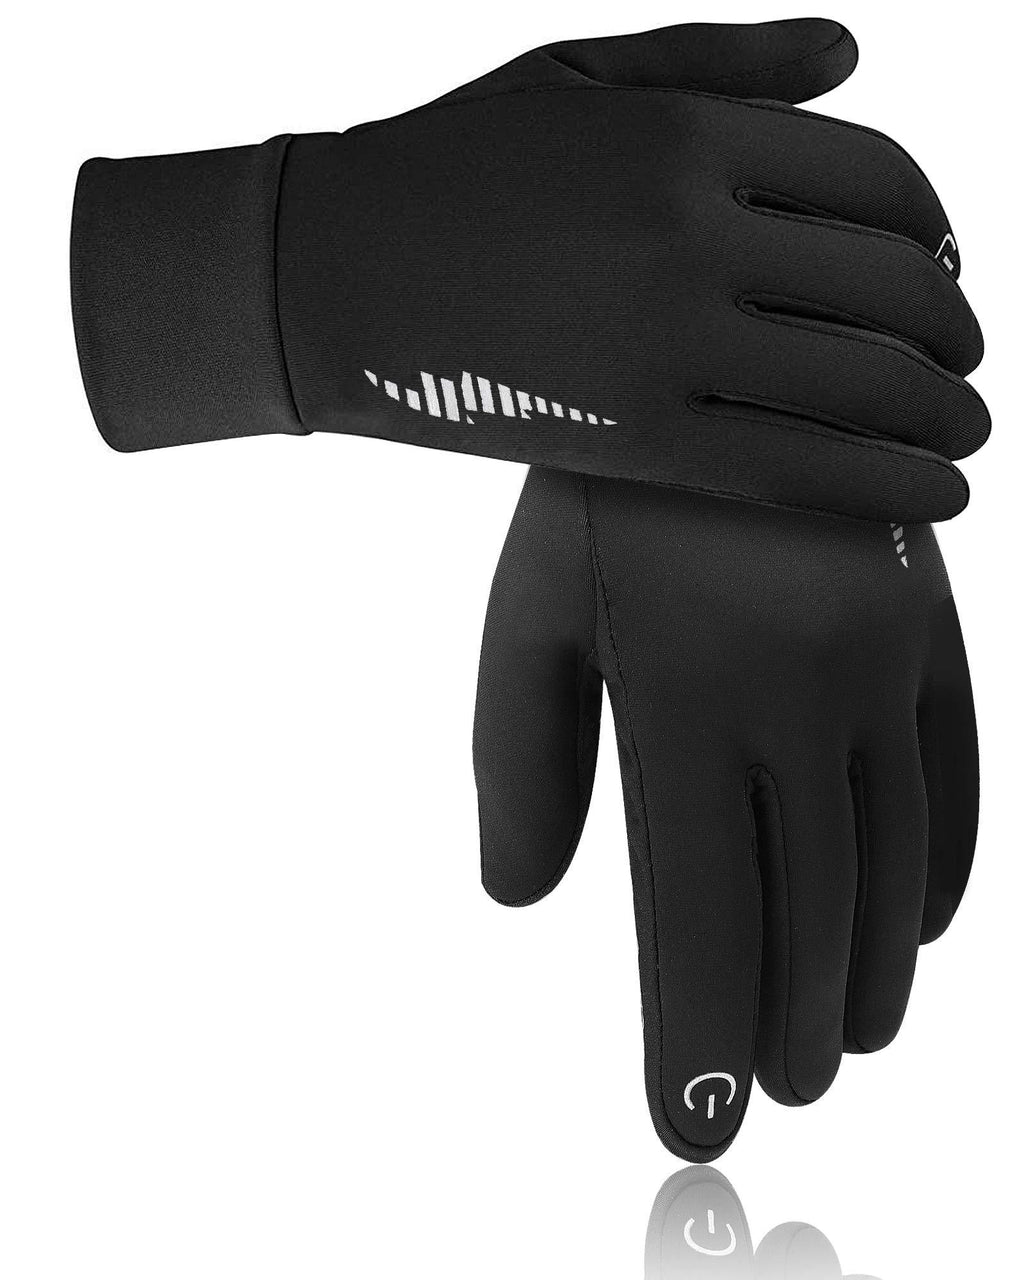 DB DEGBIT Warm Winter Gloves Windproof Touchscreen Running Workout Gloves for Men Women Black Medium - BeesActive Australia